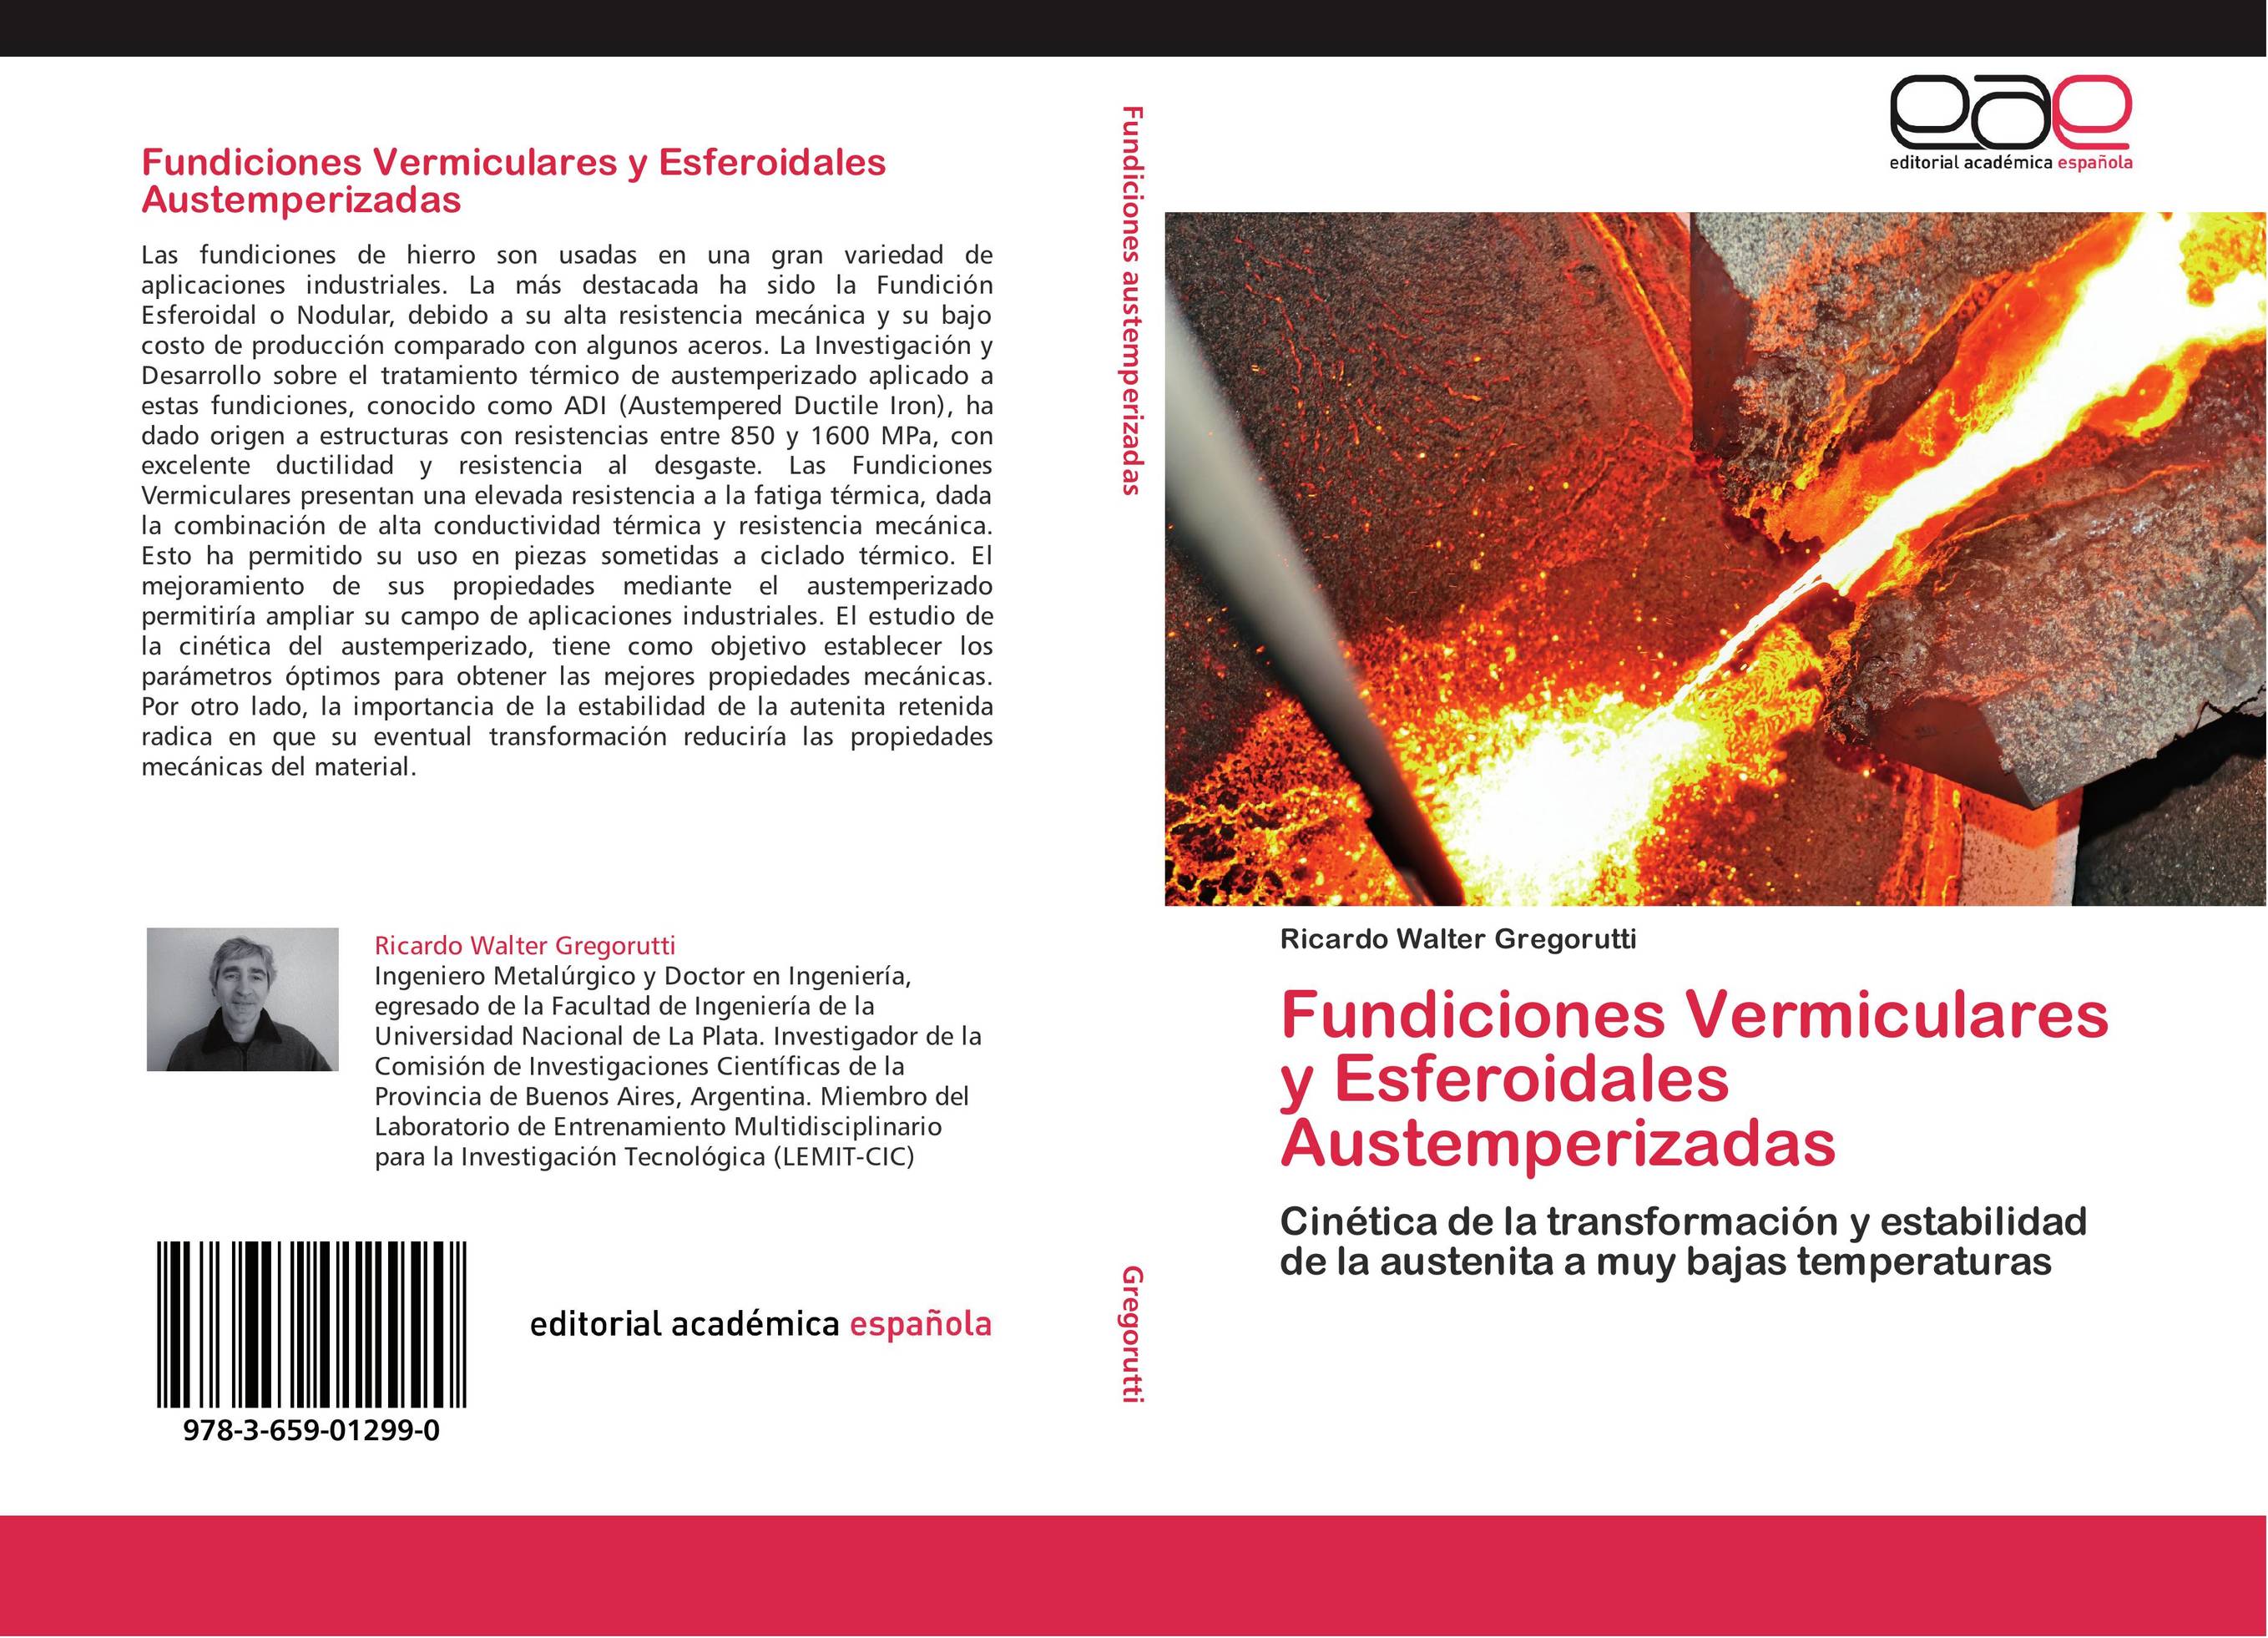 Fundiciones Vermiculares y Esferoidales Austemperizadas